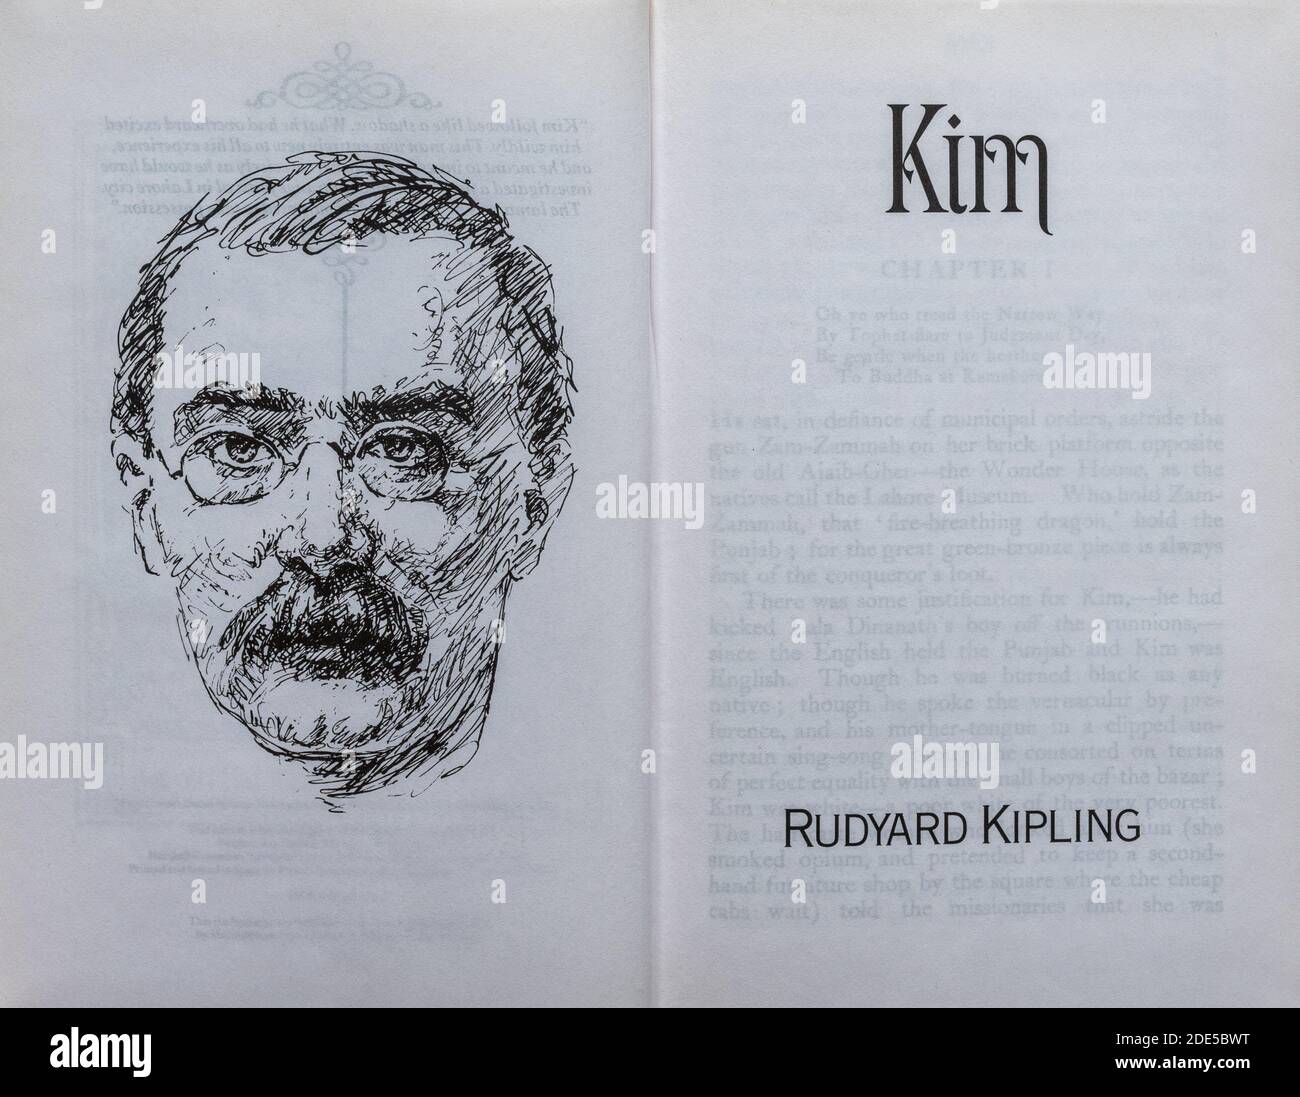 Kim Buch - Roman von Rudyard Kipling. Titelseite und Zeichnung des Autors. Stockfoto